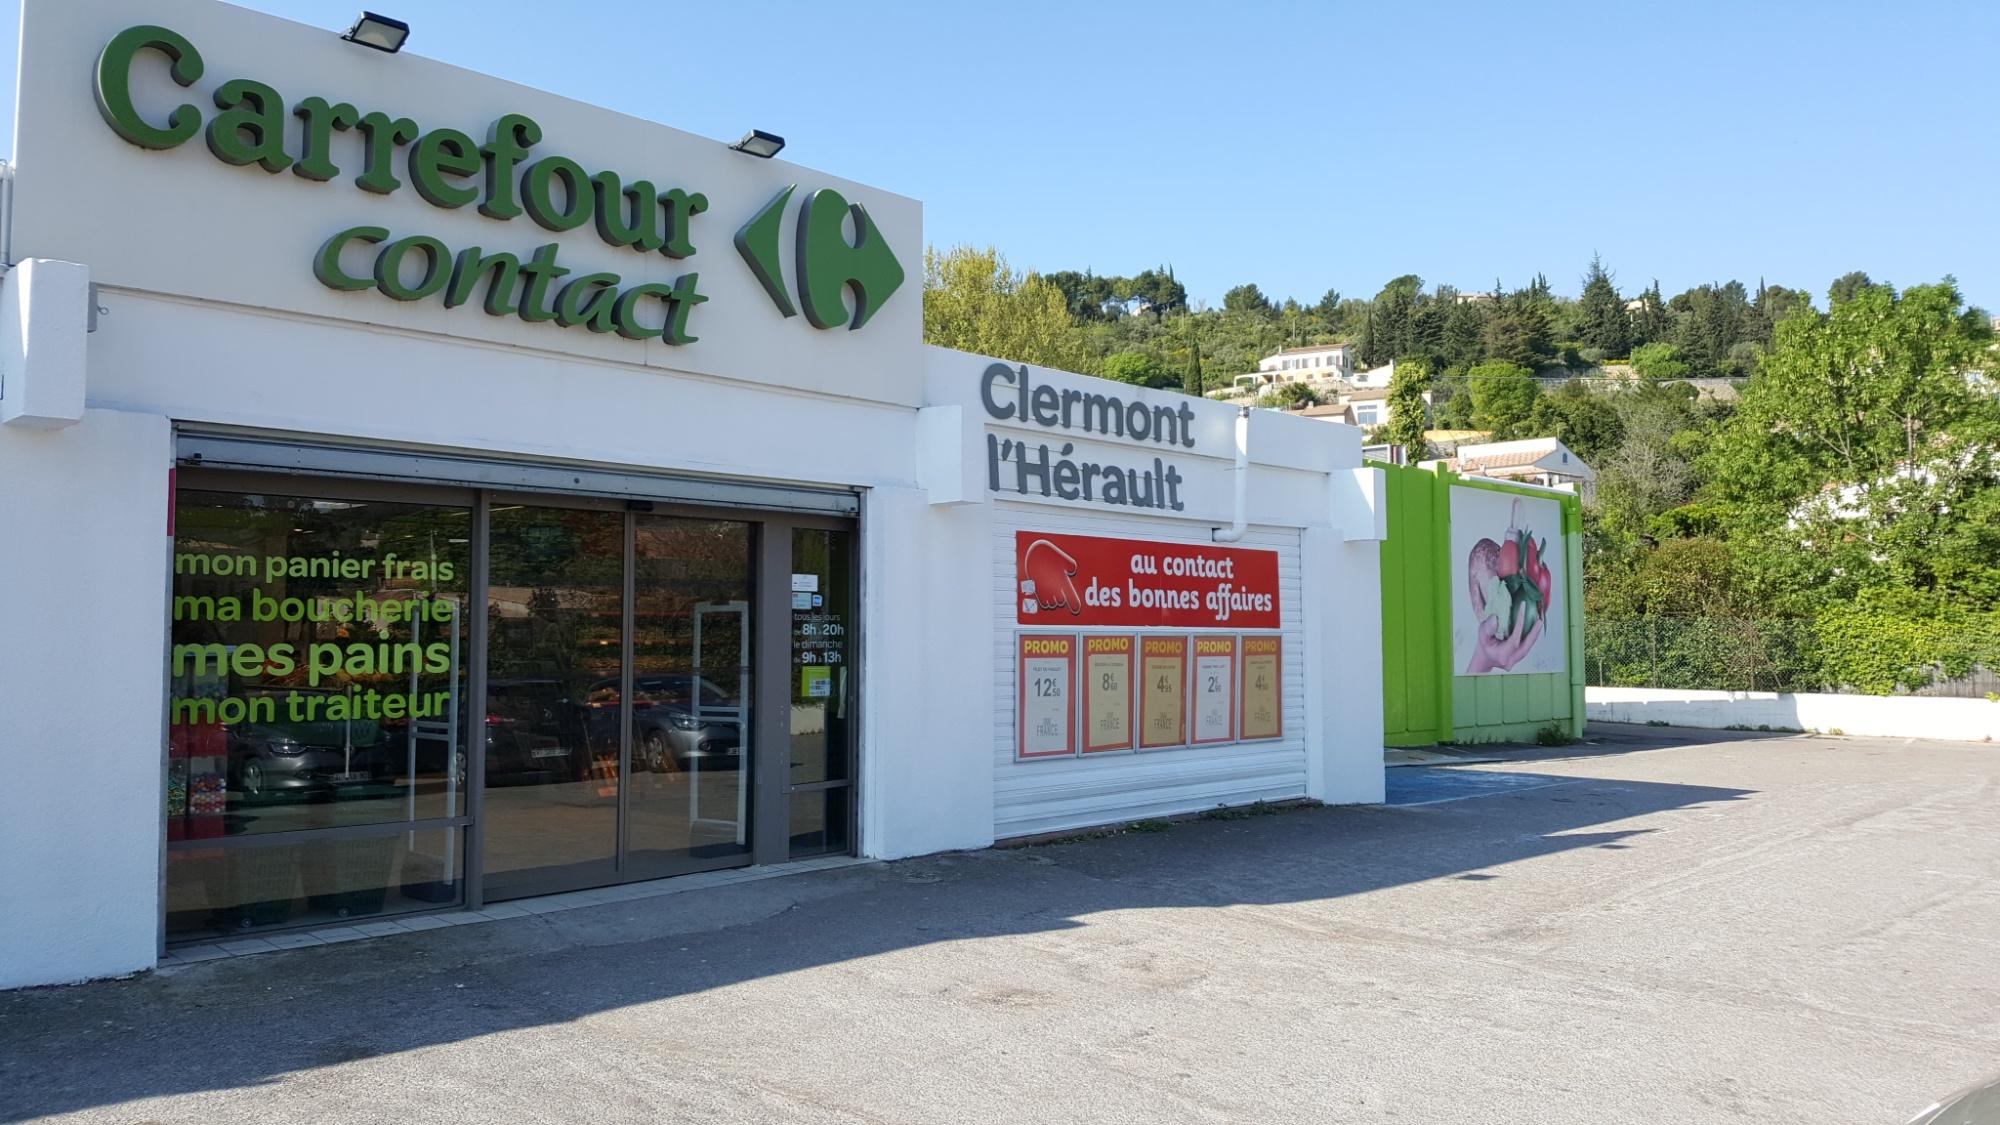 Carrefour Clermont L'hérault